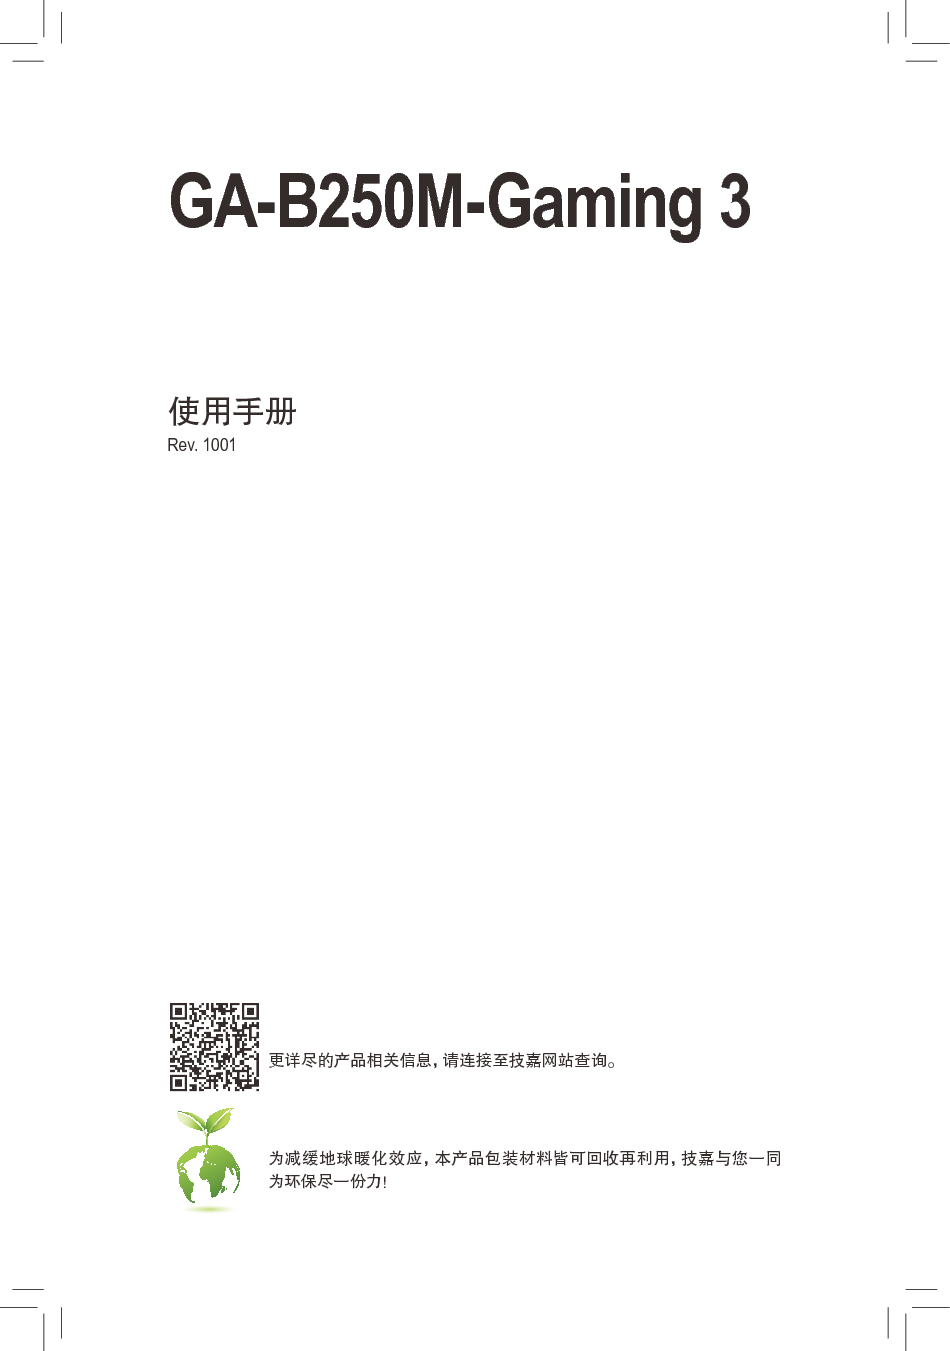 技嘉 Gigabyte GA-B250M-Gaming 3 使用手册 封面